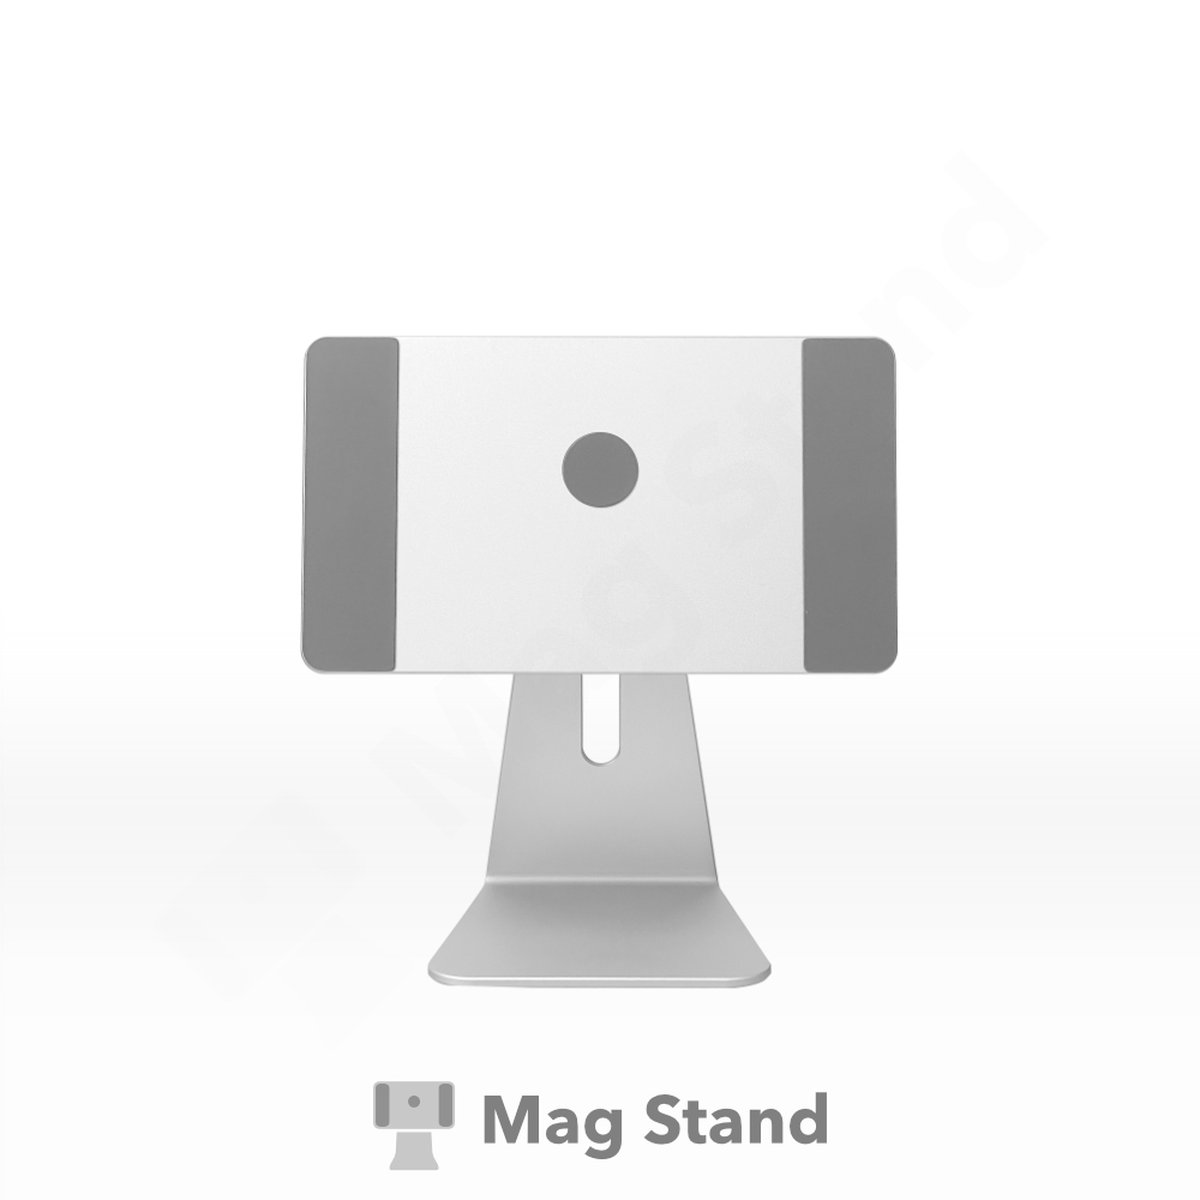 Mag Stand - magnetische iPad standaard voor iPad Pro 12.9”